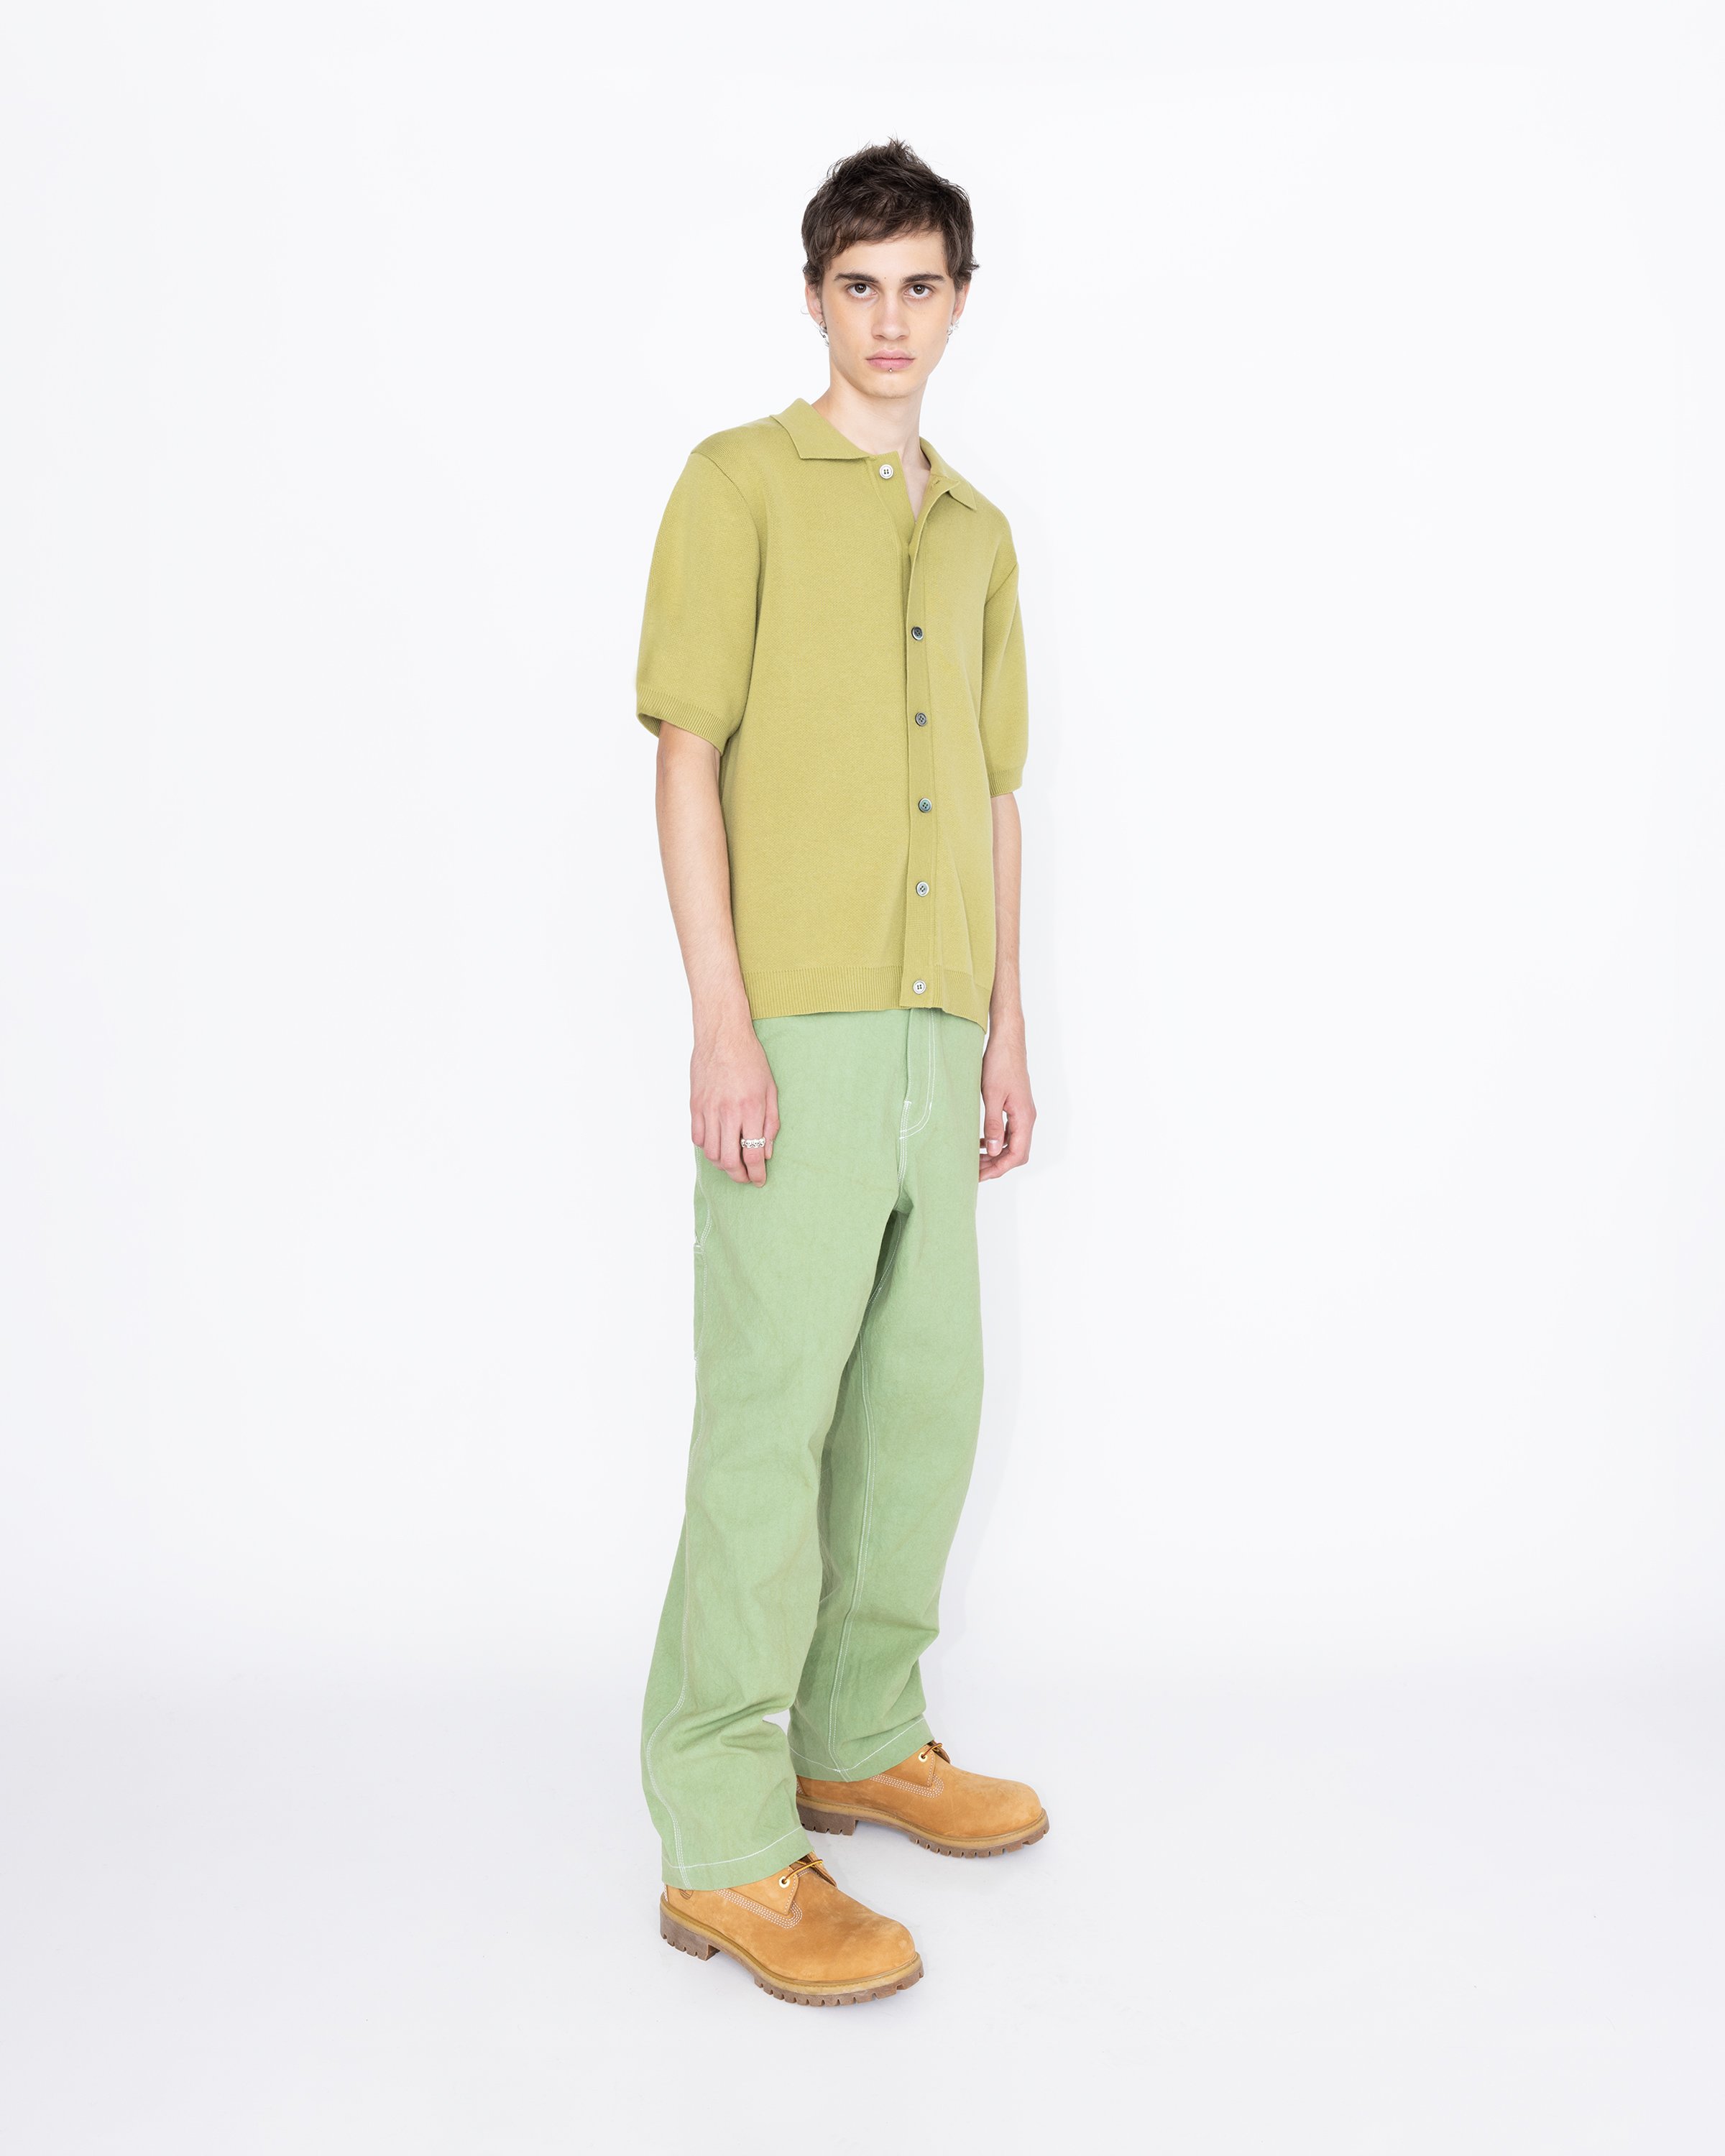 Highsnobiety HS05 – Cotton Knit Shirt Green | Highsnobiety Shop